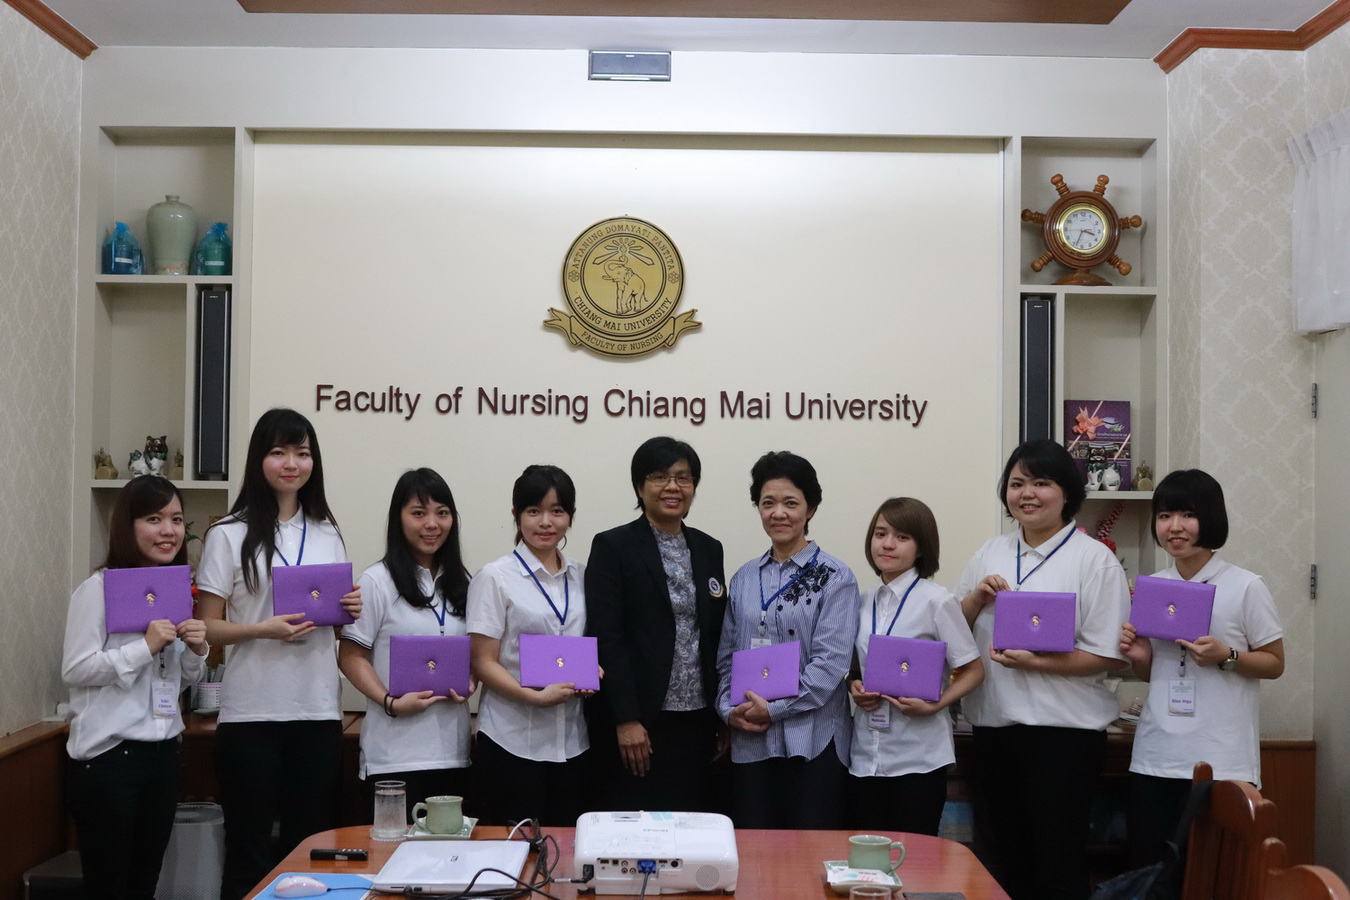 
	มอบวุฒิบัตรแก่นักศึกษาพยาบาลจาก Faculty of Medicine University of the Ryukyus ประเทศญี่ปุ่น
